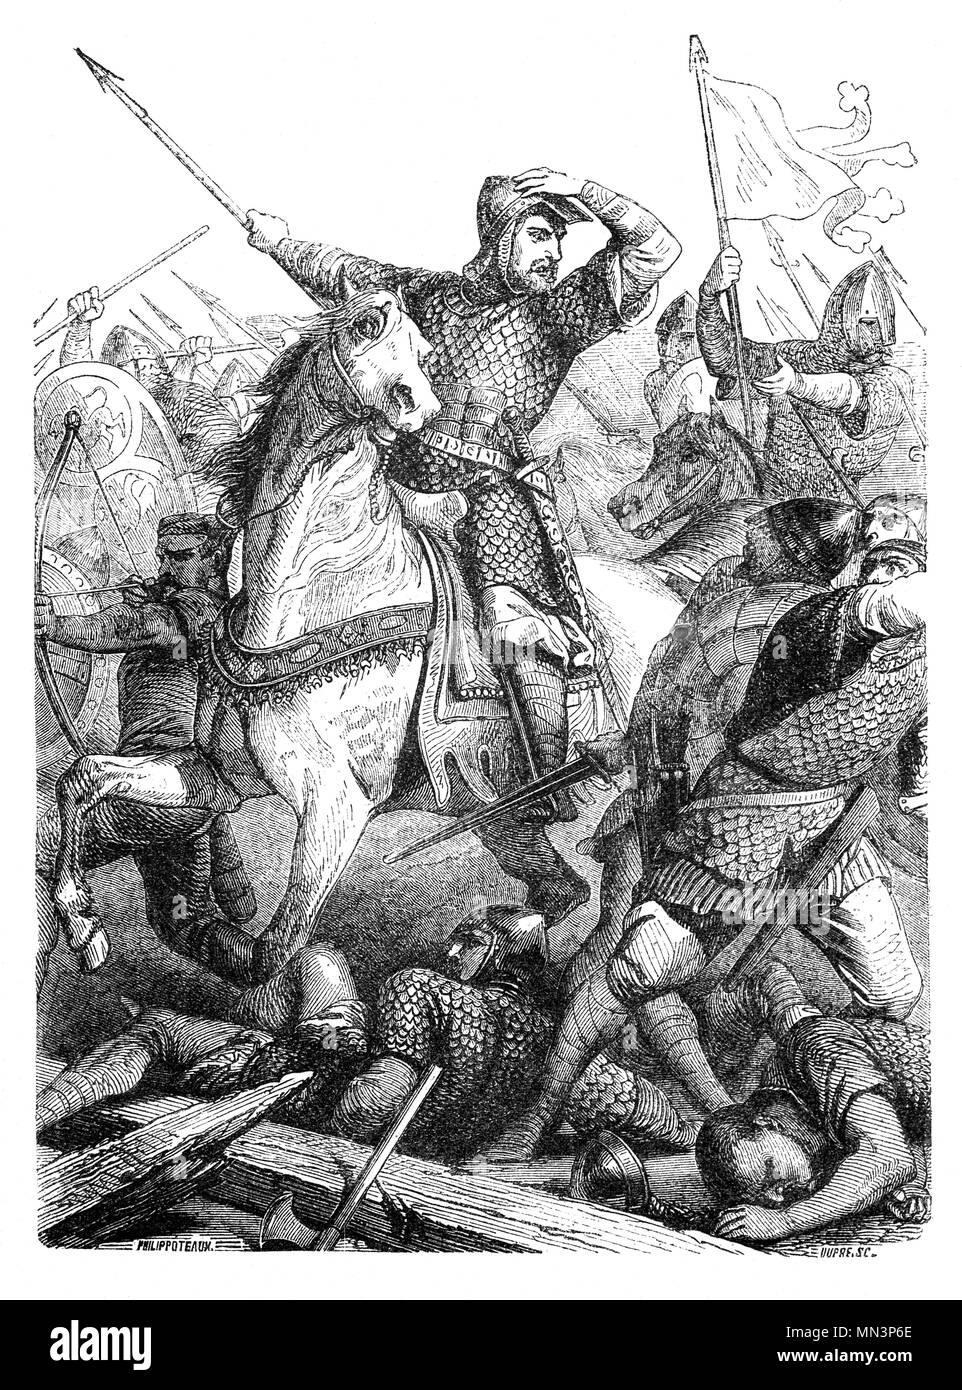 Una scena di battaglia di Hastings ha combattuto il 14 ottobre 1066 tra l'esercito Norman-French di William, il duca di Normandia e un esercito inglese sotto il re anglosassone Harold Godwinson, inizio la conquista normanna di Inghilterra. Esso ha avuto luogo circa 7 miglia (11 chilometri a nord-ovest di Hastings, vicino all'attuale paese di Battle, East Sussex, ed è stata una decisiva vittoria normanna. Foto Stock